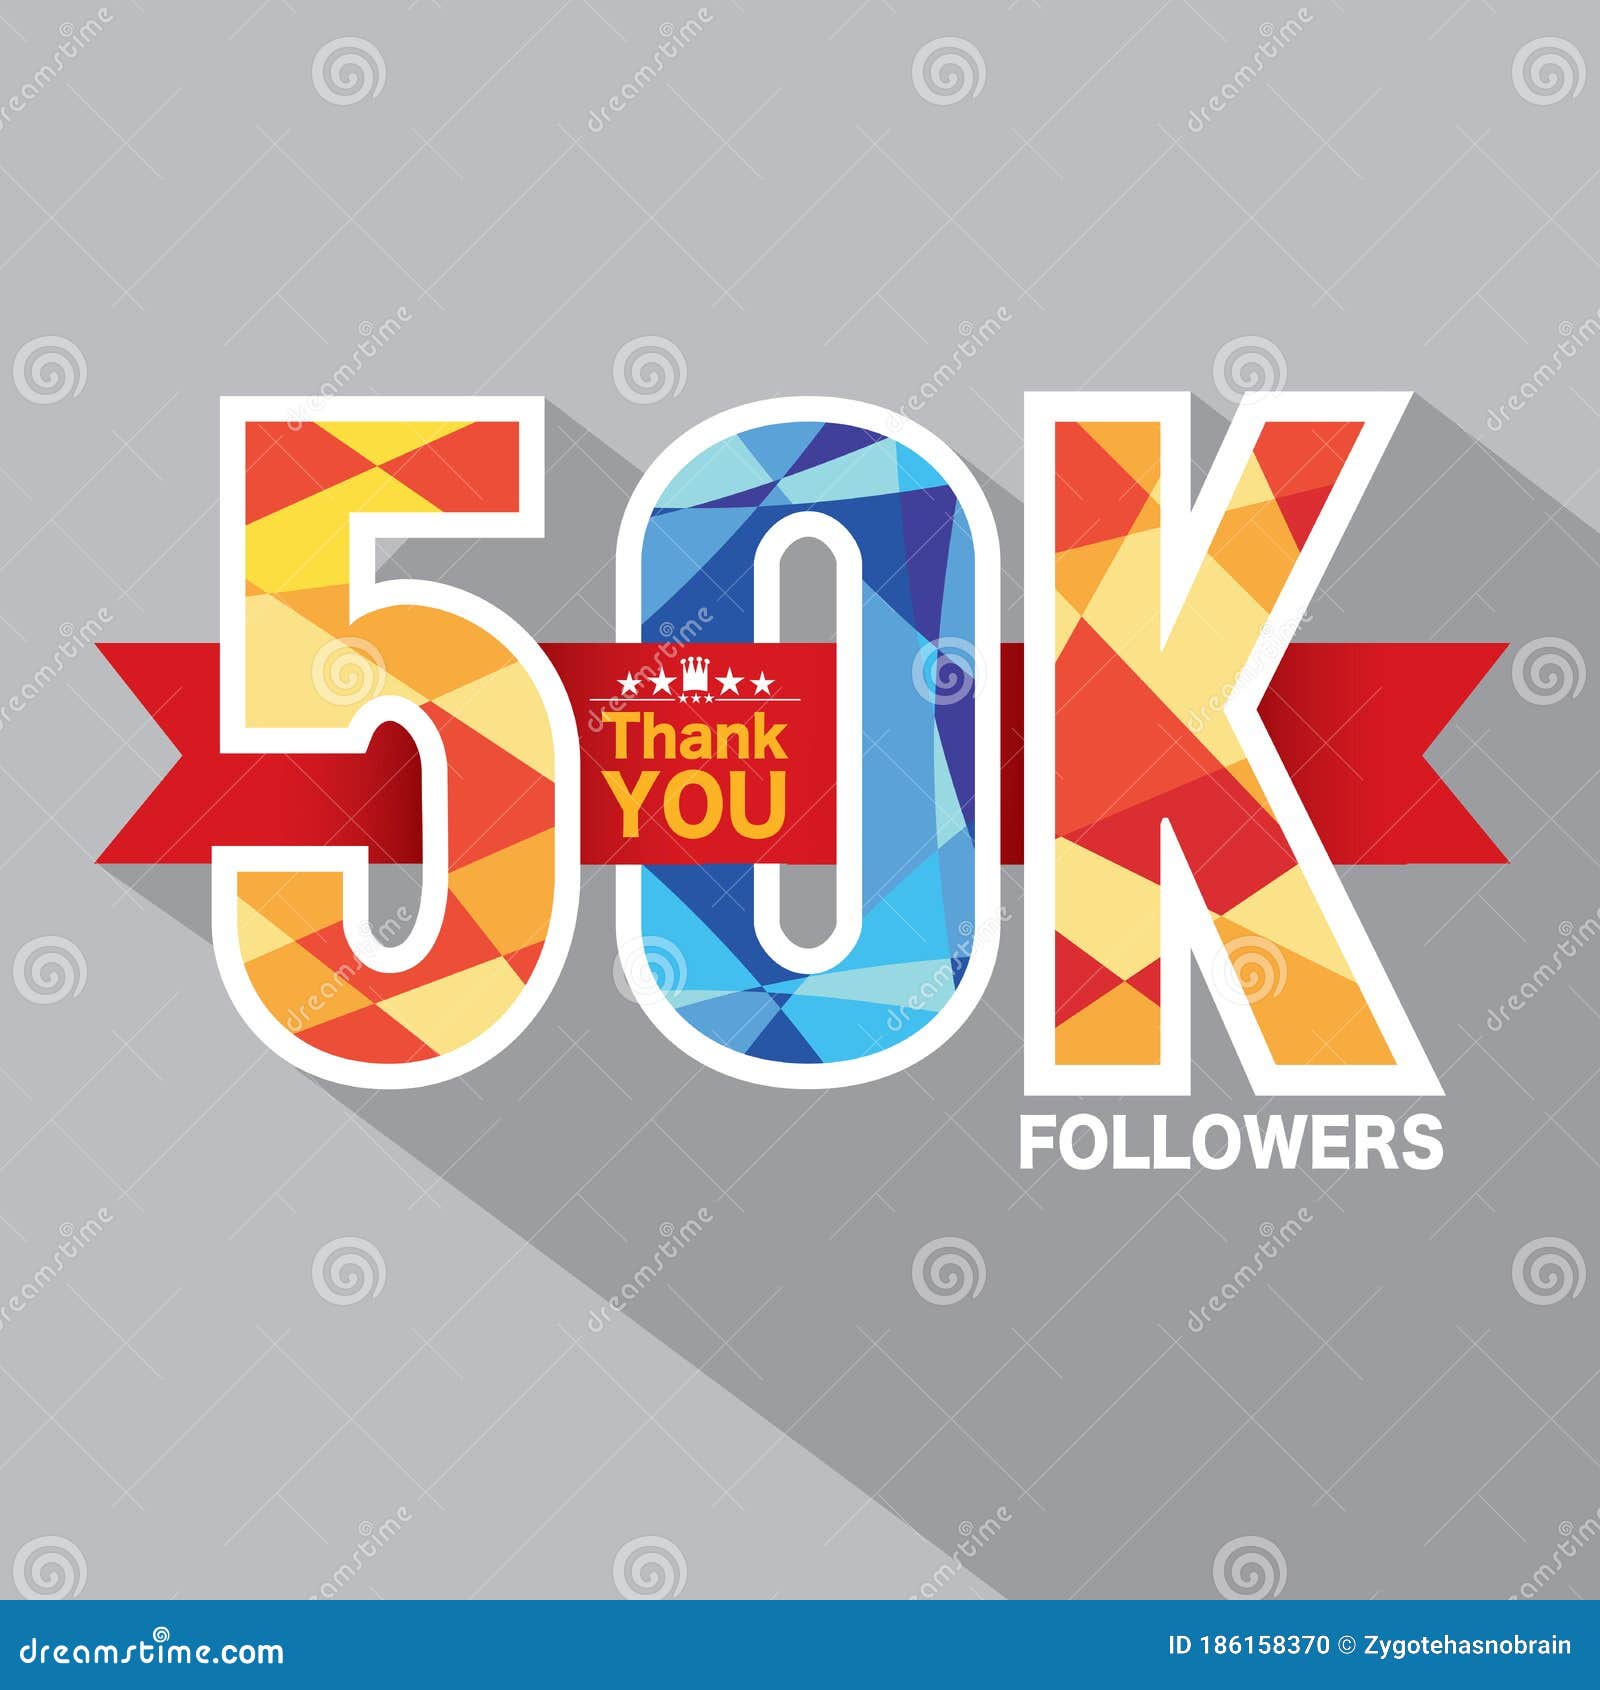 Banner kỷ niệm 50k followers là một kỷ niệm đáng nhớ và ý nghĩa. Hãy cùng xem hình ảnh để chúng ta có thể chia sẻ niềm vui với cộng đồng followers của chúng ta.